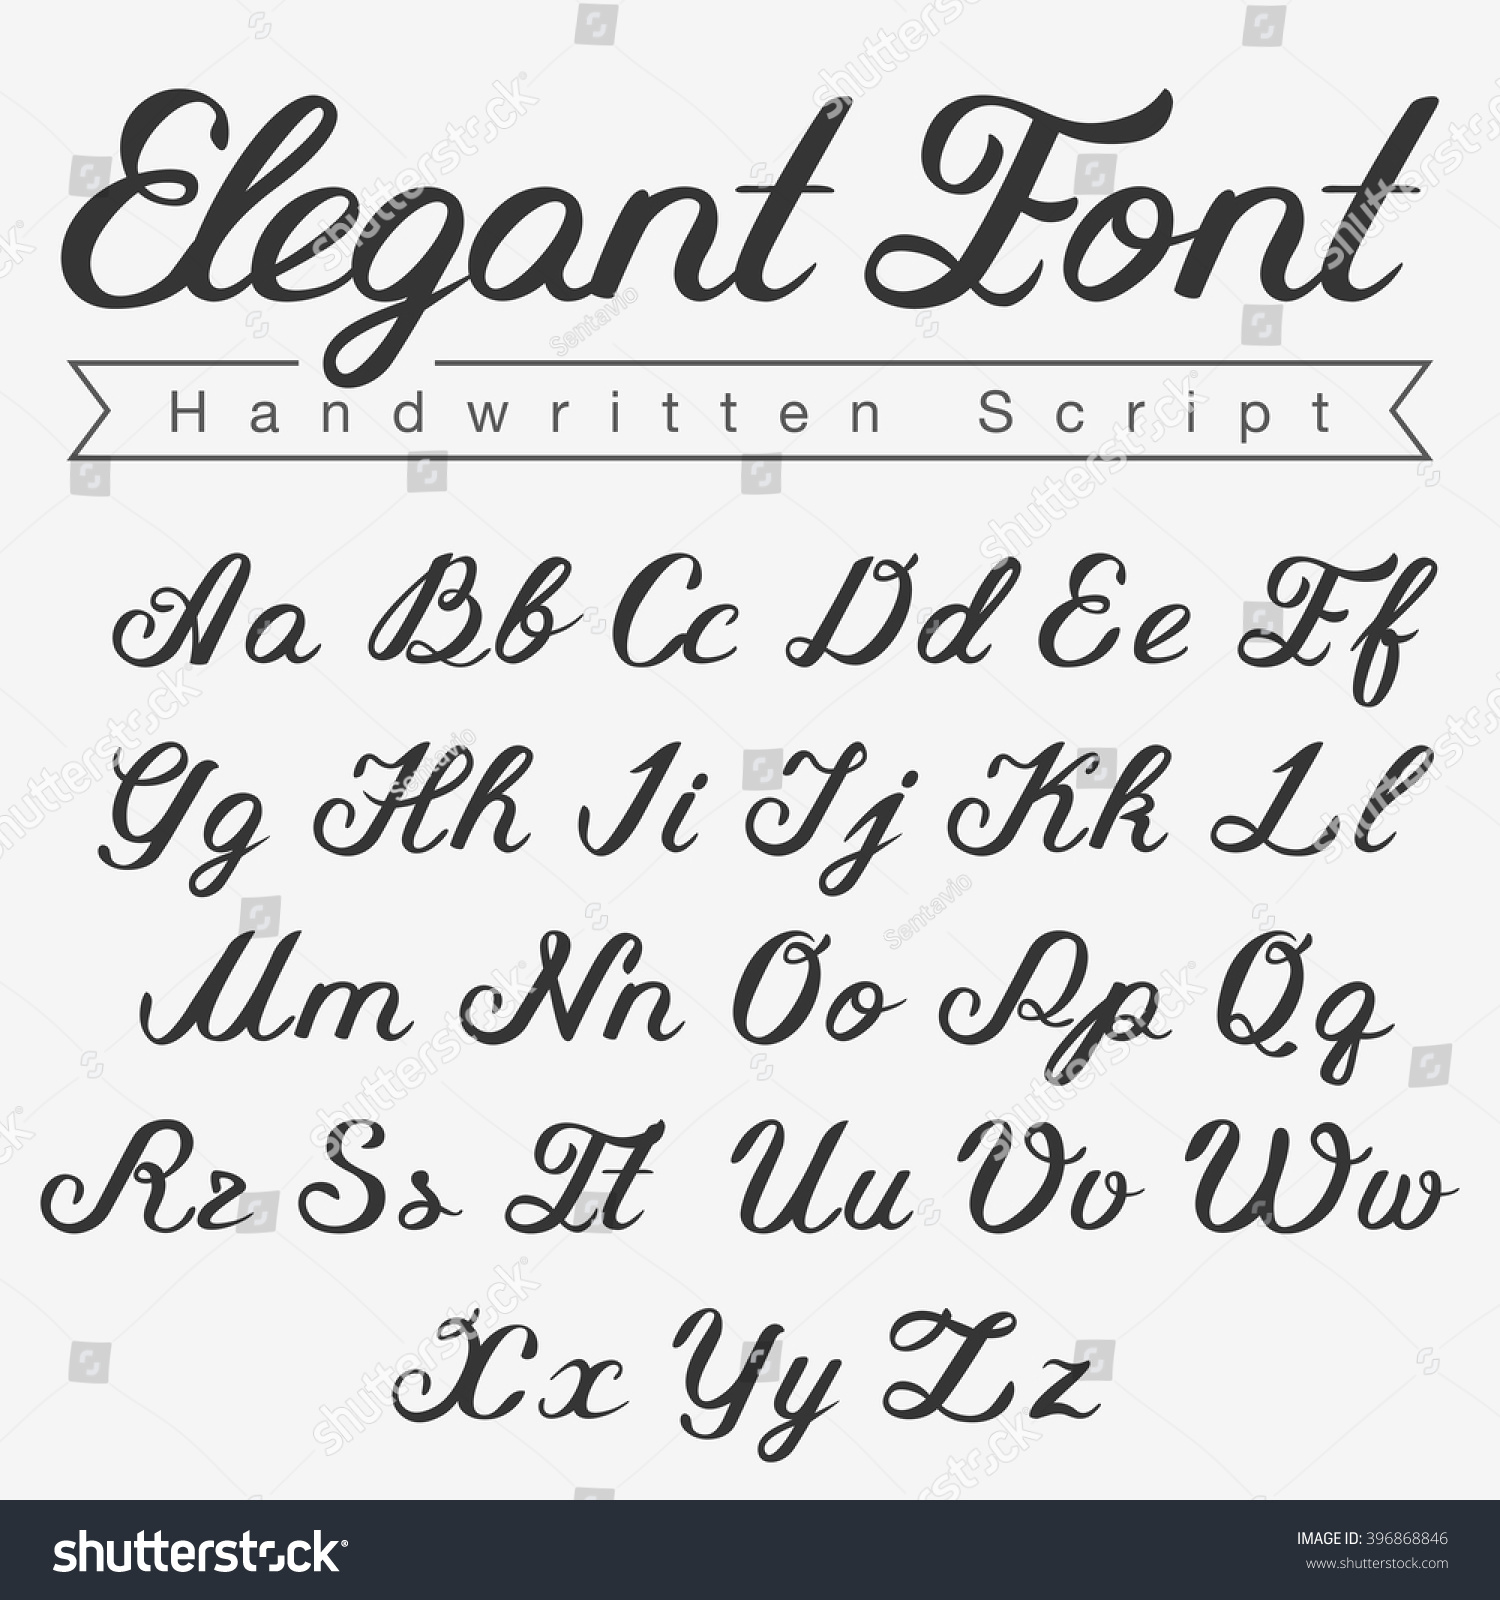 Elegant Handwritten Script Font Design Vector Stock Vector Royalty